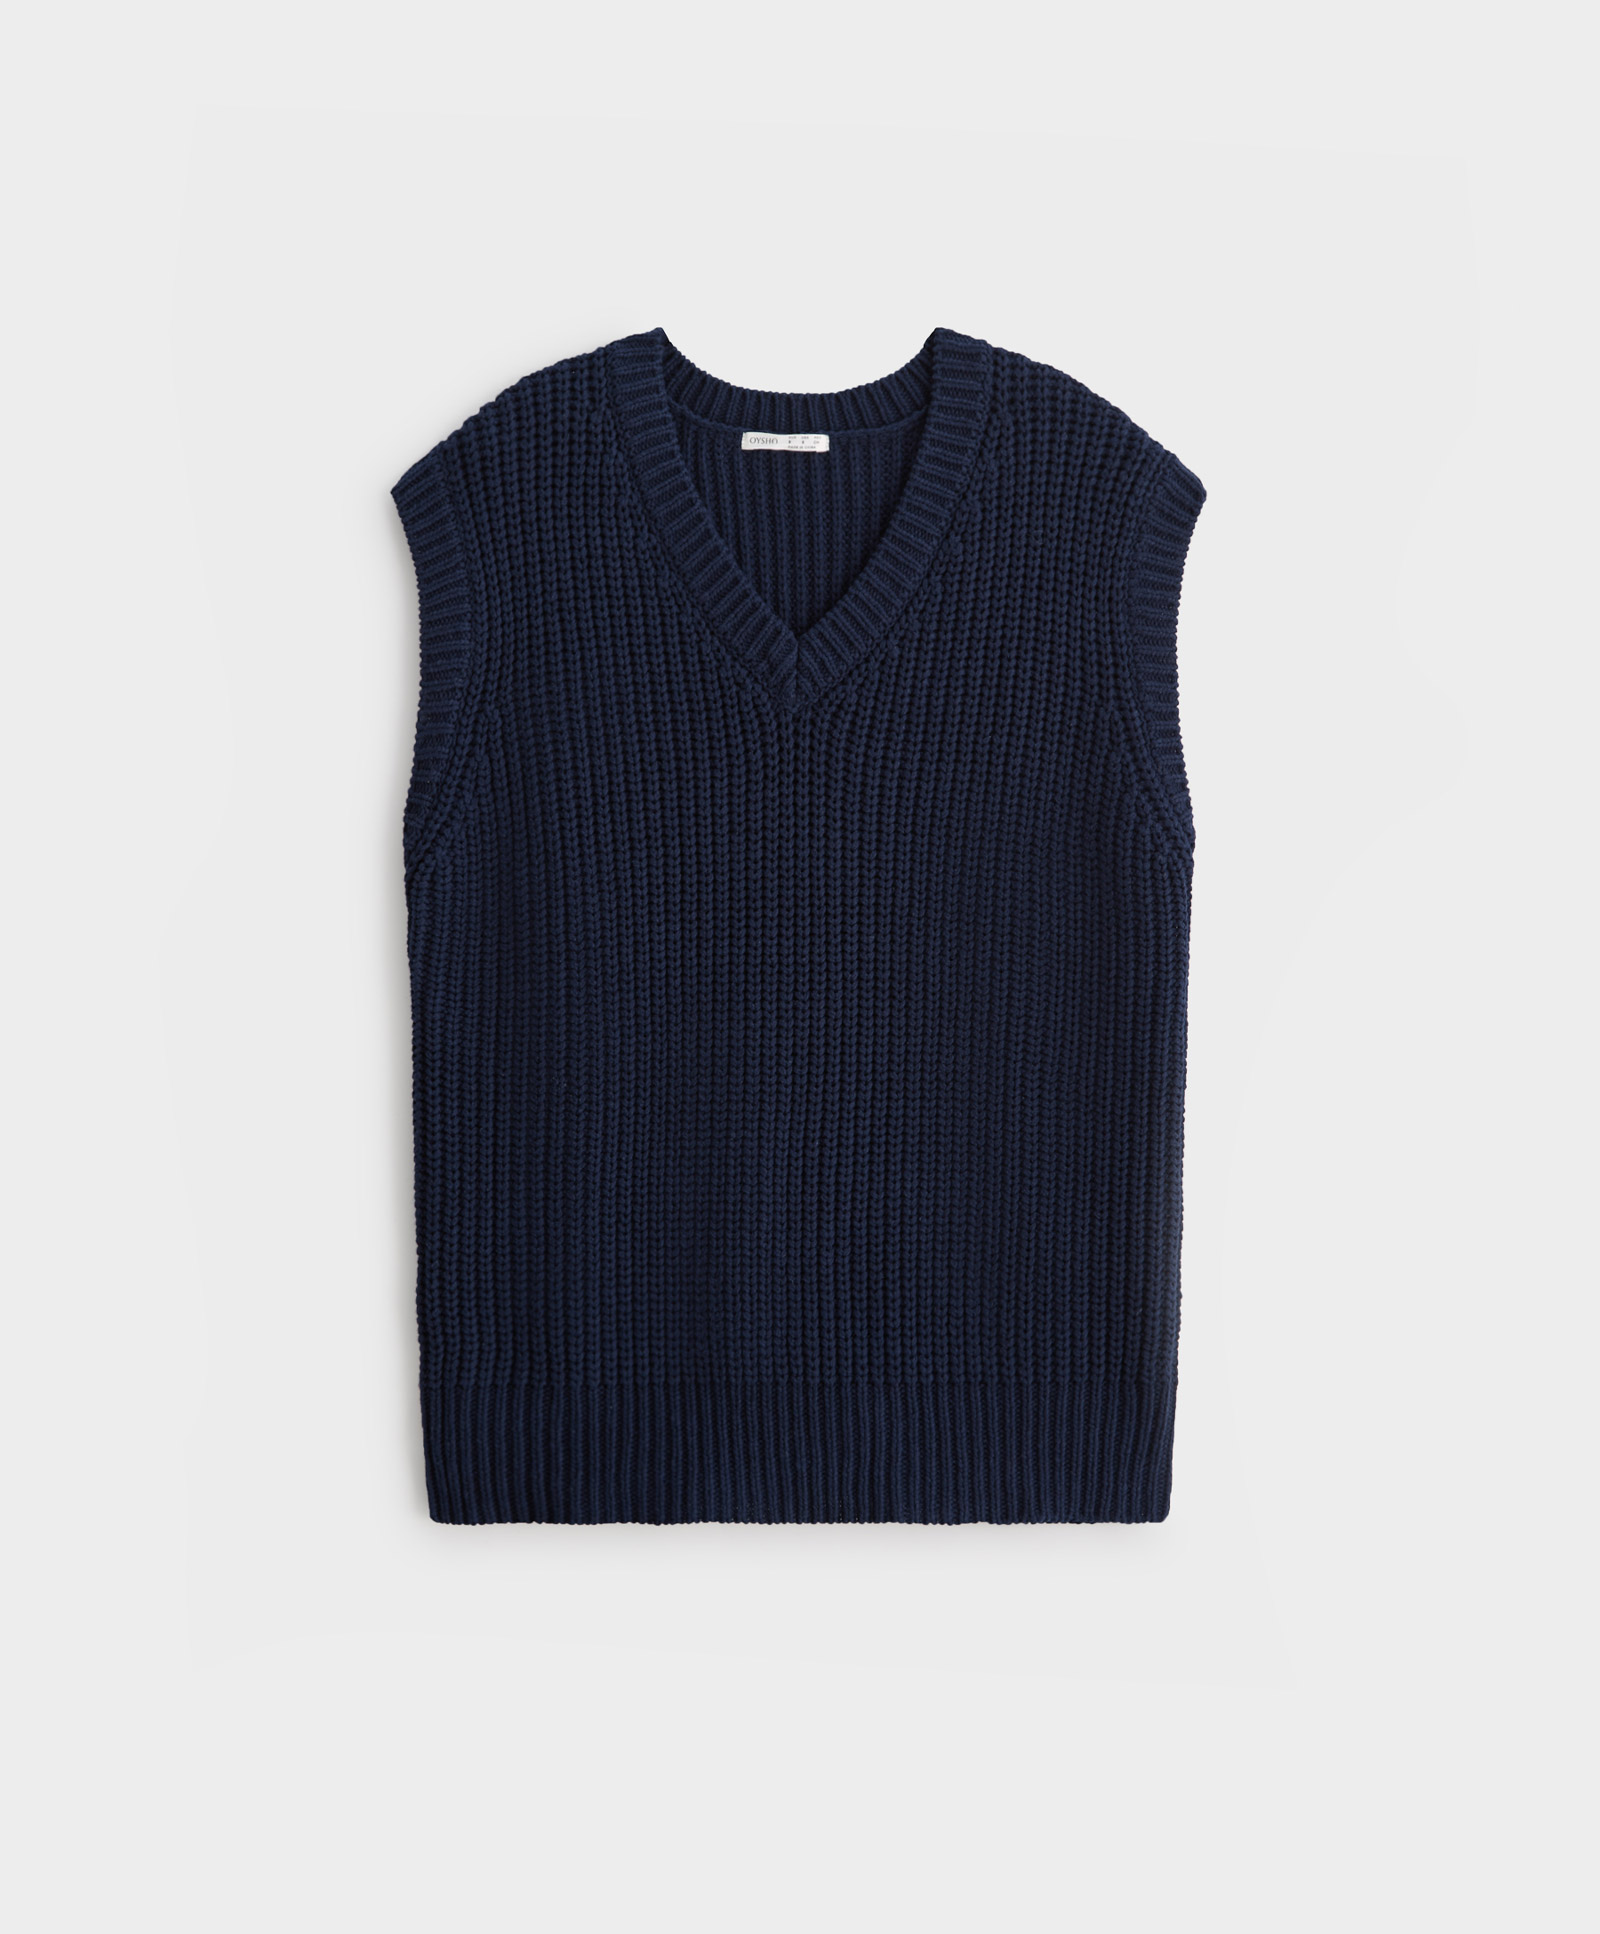 100% cotton knit vest